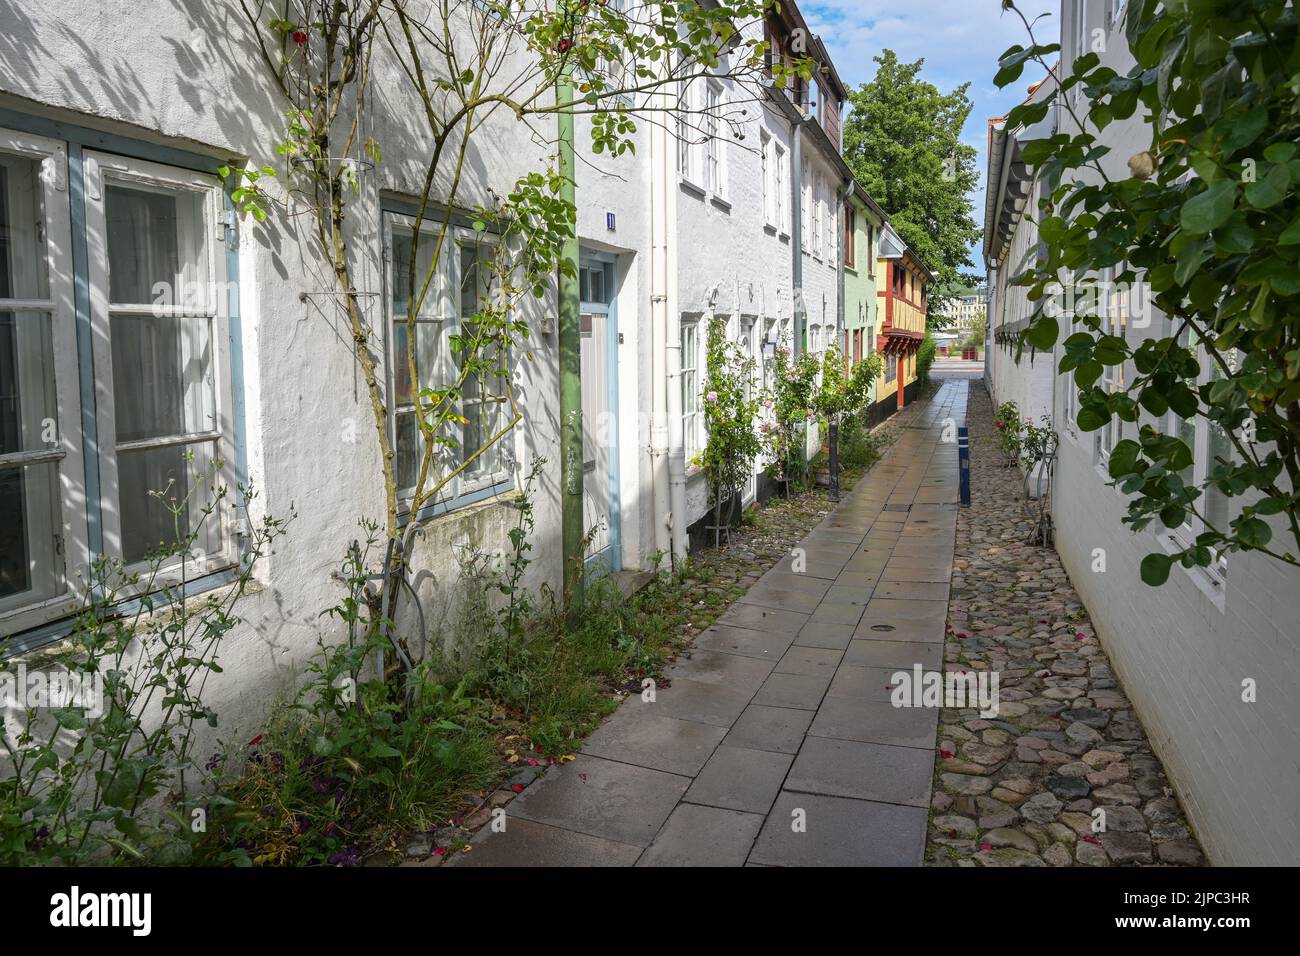 Flensburg nel centro storico, tipico vicolo stretto tra piccole case storiche della città con rose sulle facciate in ciottoli, destinazione turistica, Foto Stock